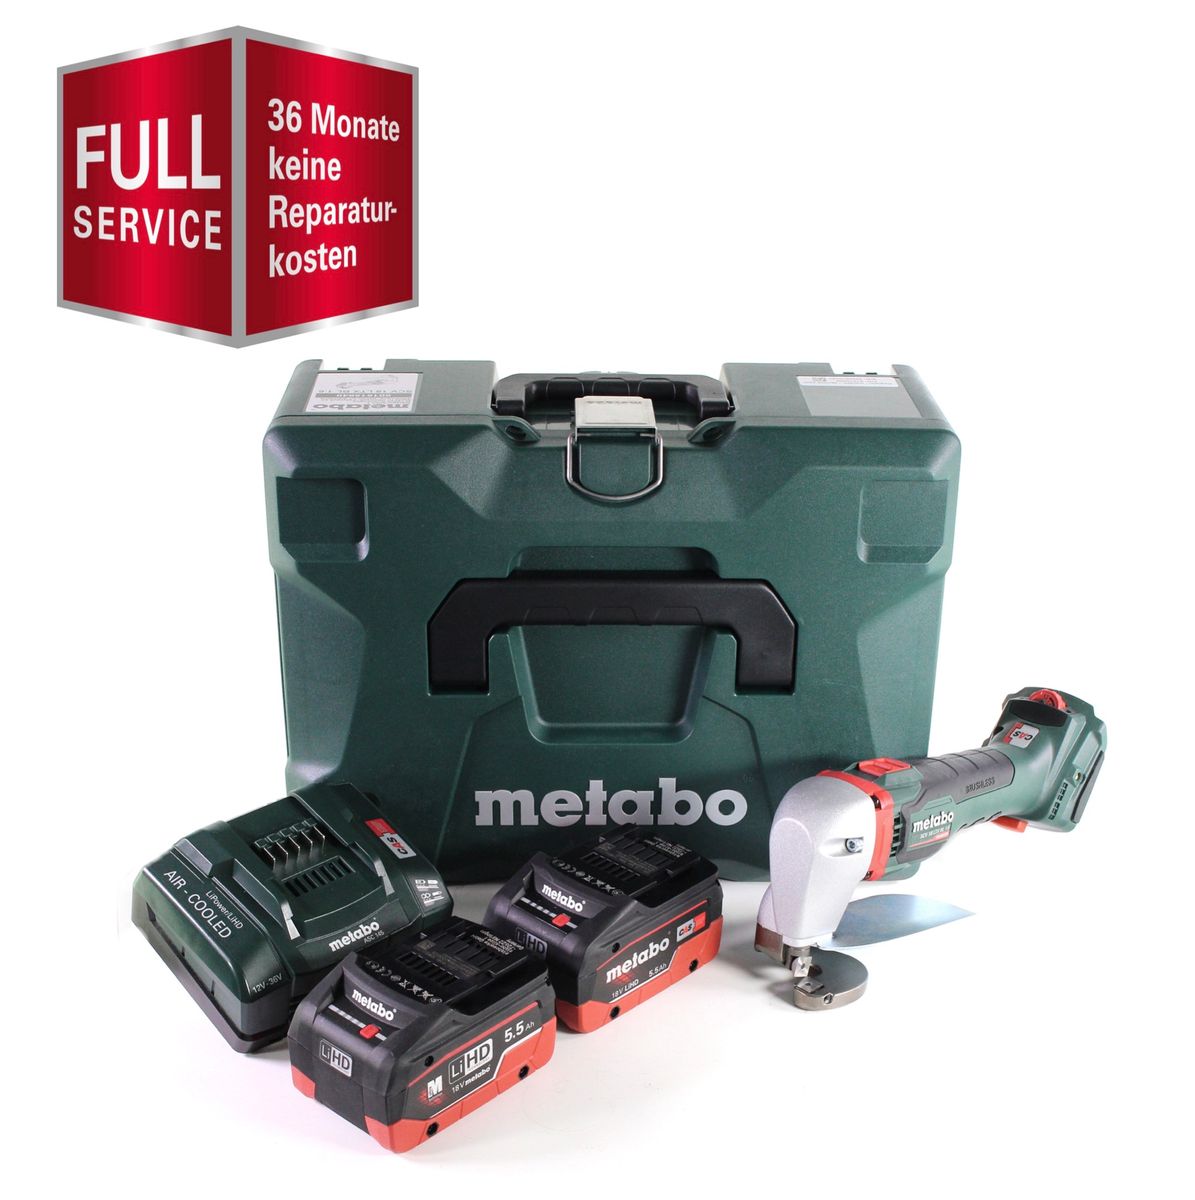 Metabo SCV 18 LTX BL 1.6 Cisaille à tôle sans fil 18 V Brushless + 2x Batteries LiHD 5,5 Ah + Chargeur + Coffret  MetaLoc - Full Service - GRATUIT - 3 ans de protection complète